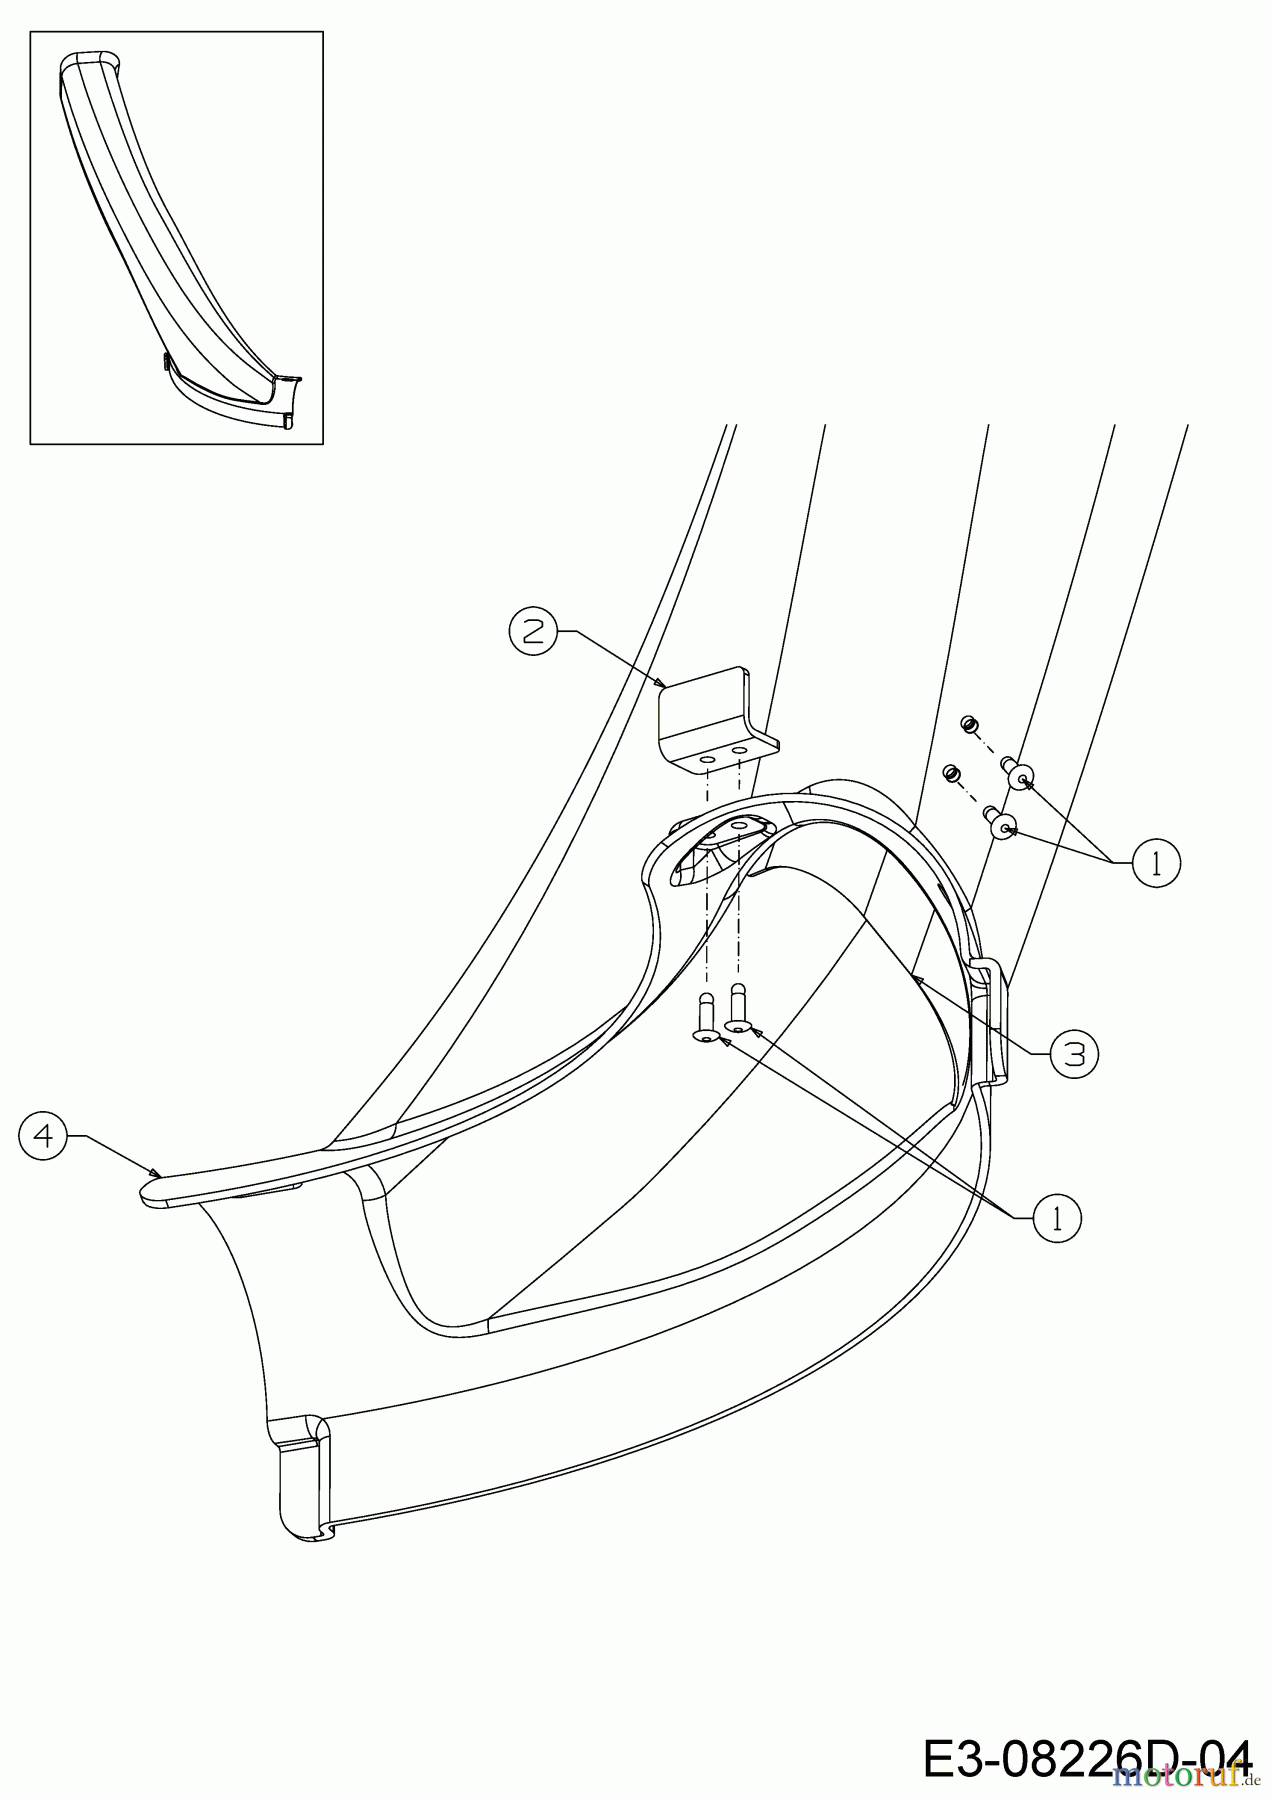  WOLF-Garten Expert Rasentraktoren Expert Scooter Pro Hydro 13A221HD650  (2017) Auswurfschacht